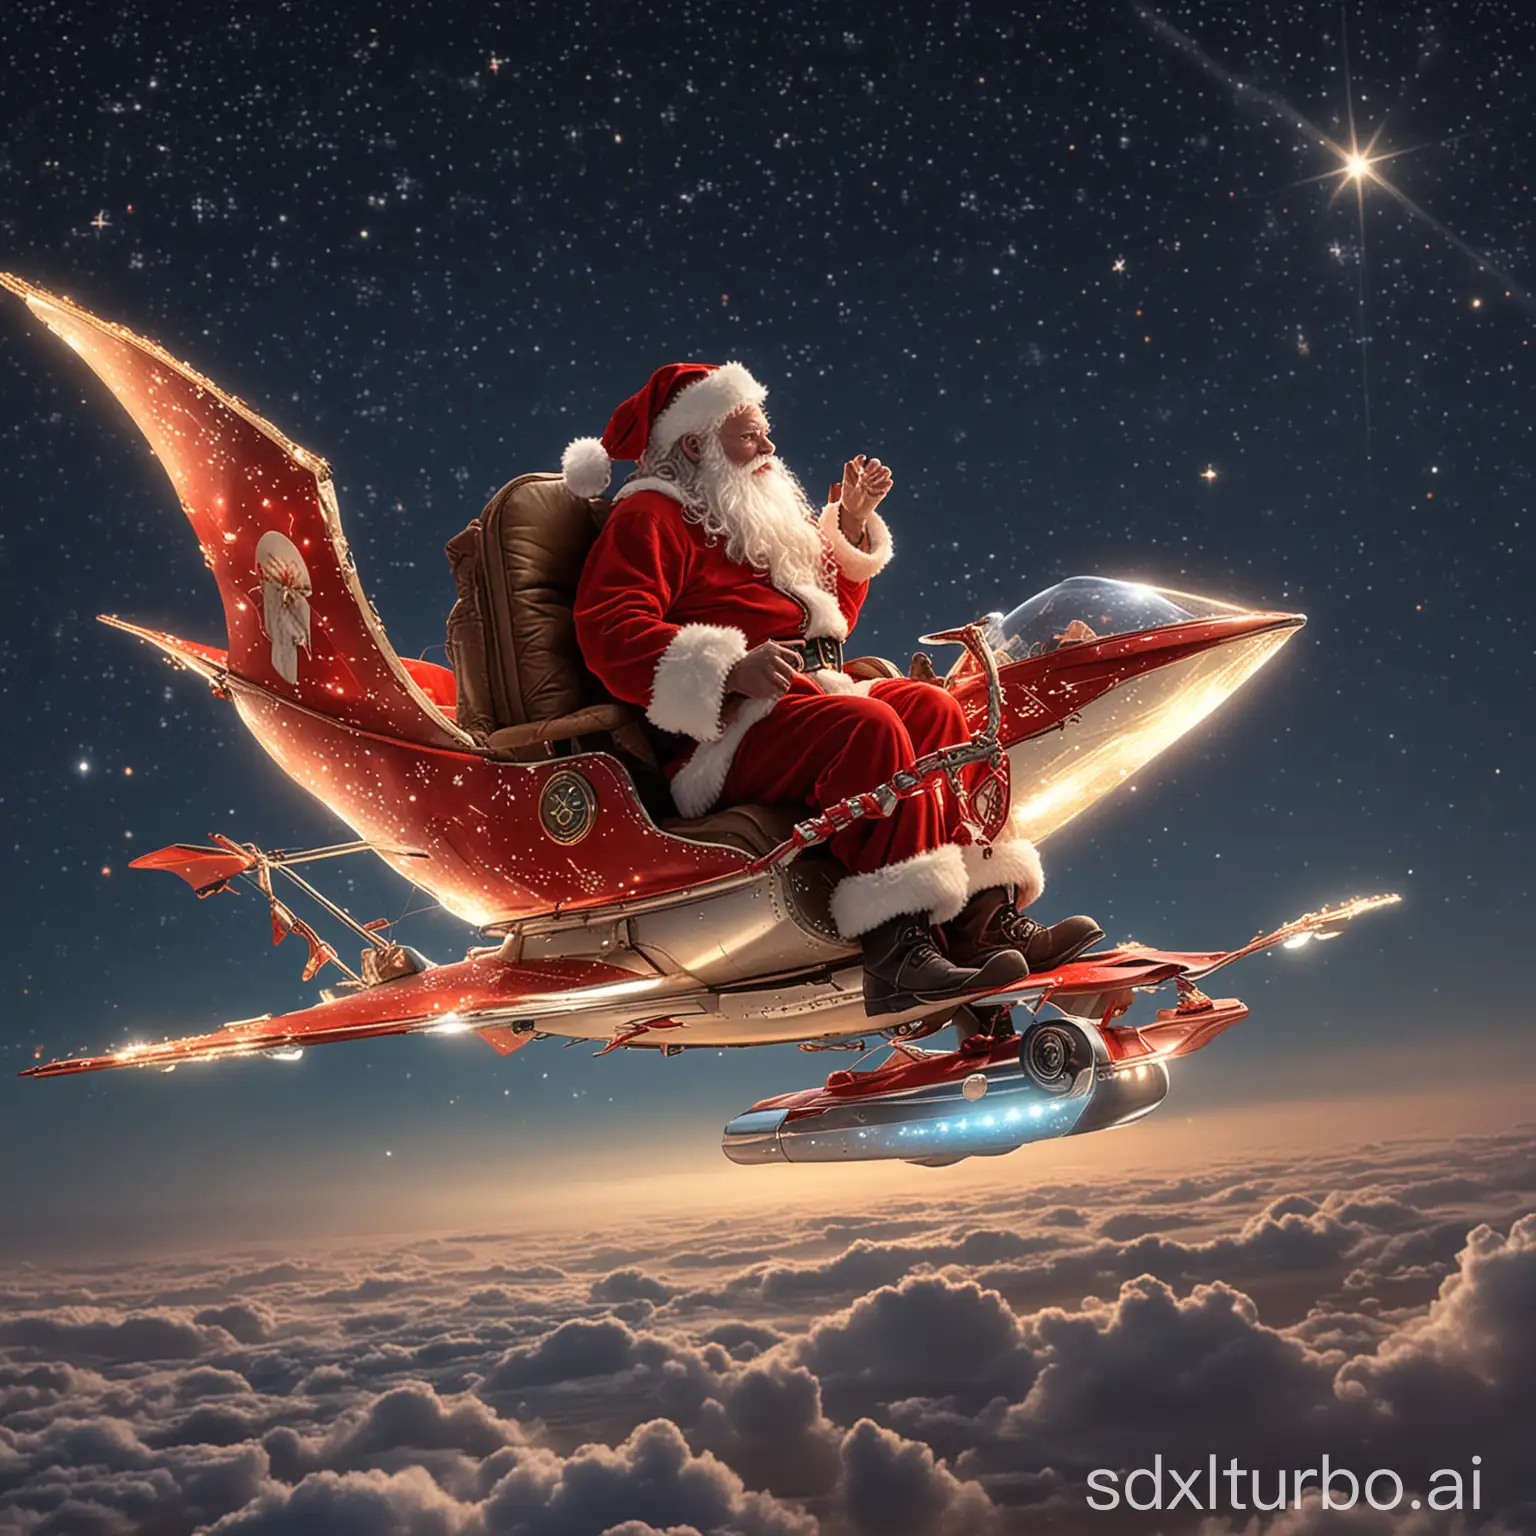 Santa, wie er auf einem glitzernden bemanntes Gleitfluggerät reitet, der ihn hoch in den Nachthimmel trägt, wo die Sterne seine einzigen Begleiter sind.